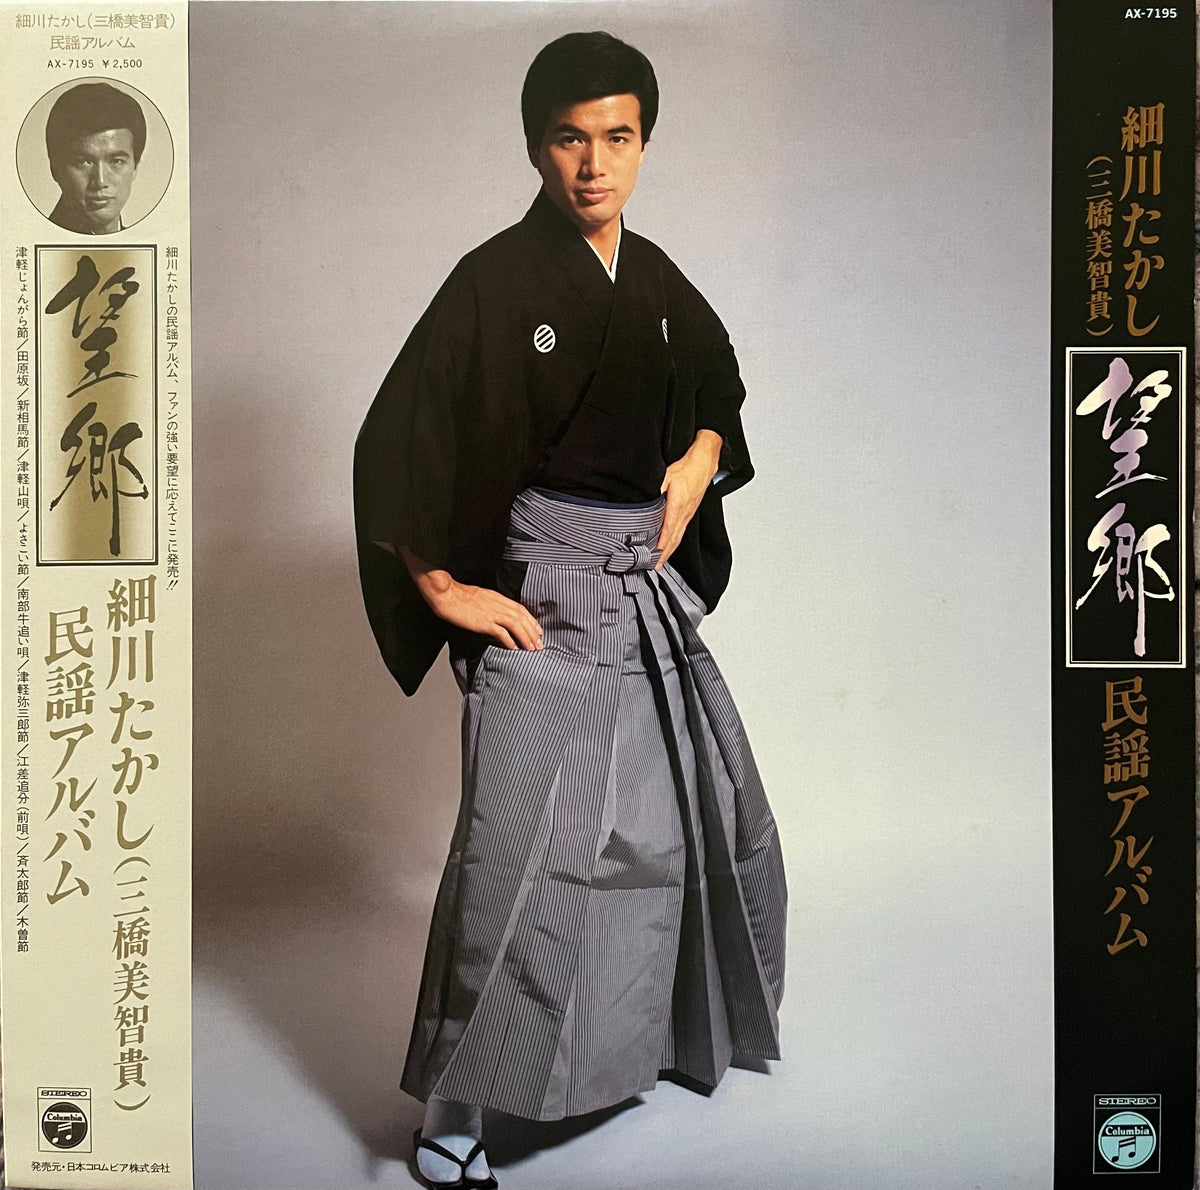 Takashi Hosokawa (Michio Mihashi) u003d 細川たかし (三橋美智貴) - 望郷 / 民謡アルバム – Galapagos  Records